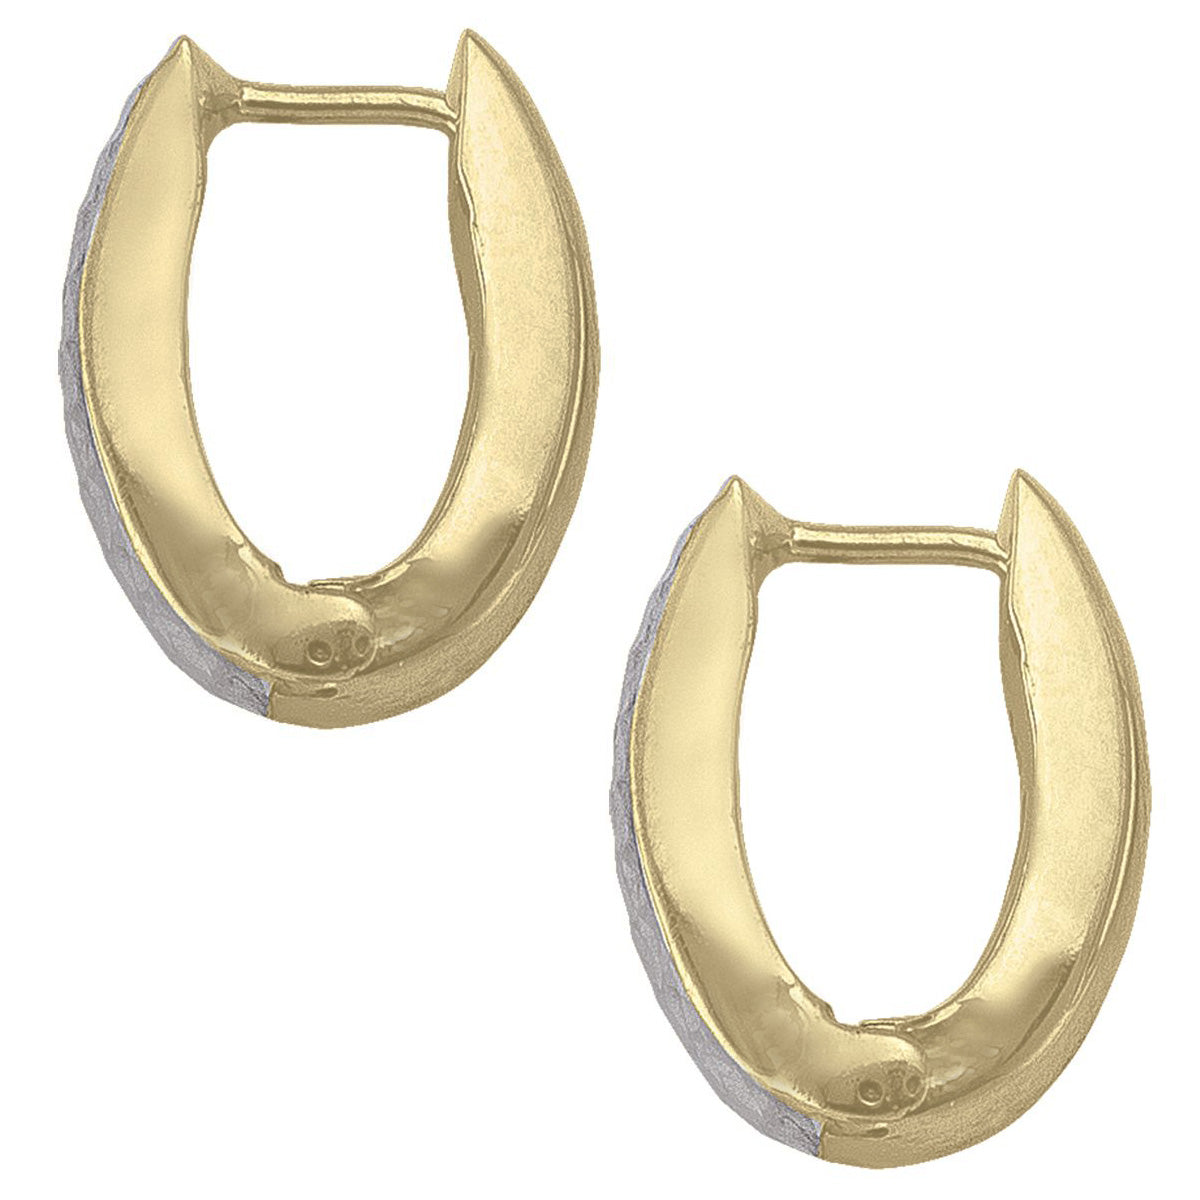 EHG0115, Gold Earrings, Huggies, 4.6 mm Tubing